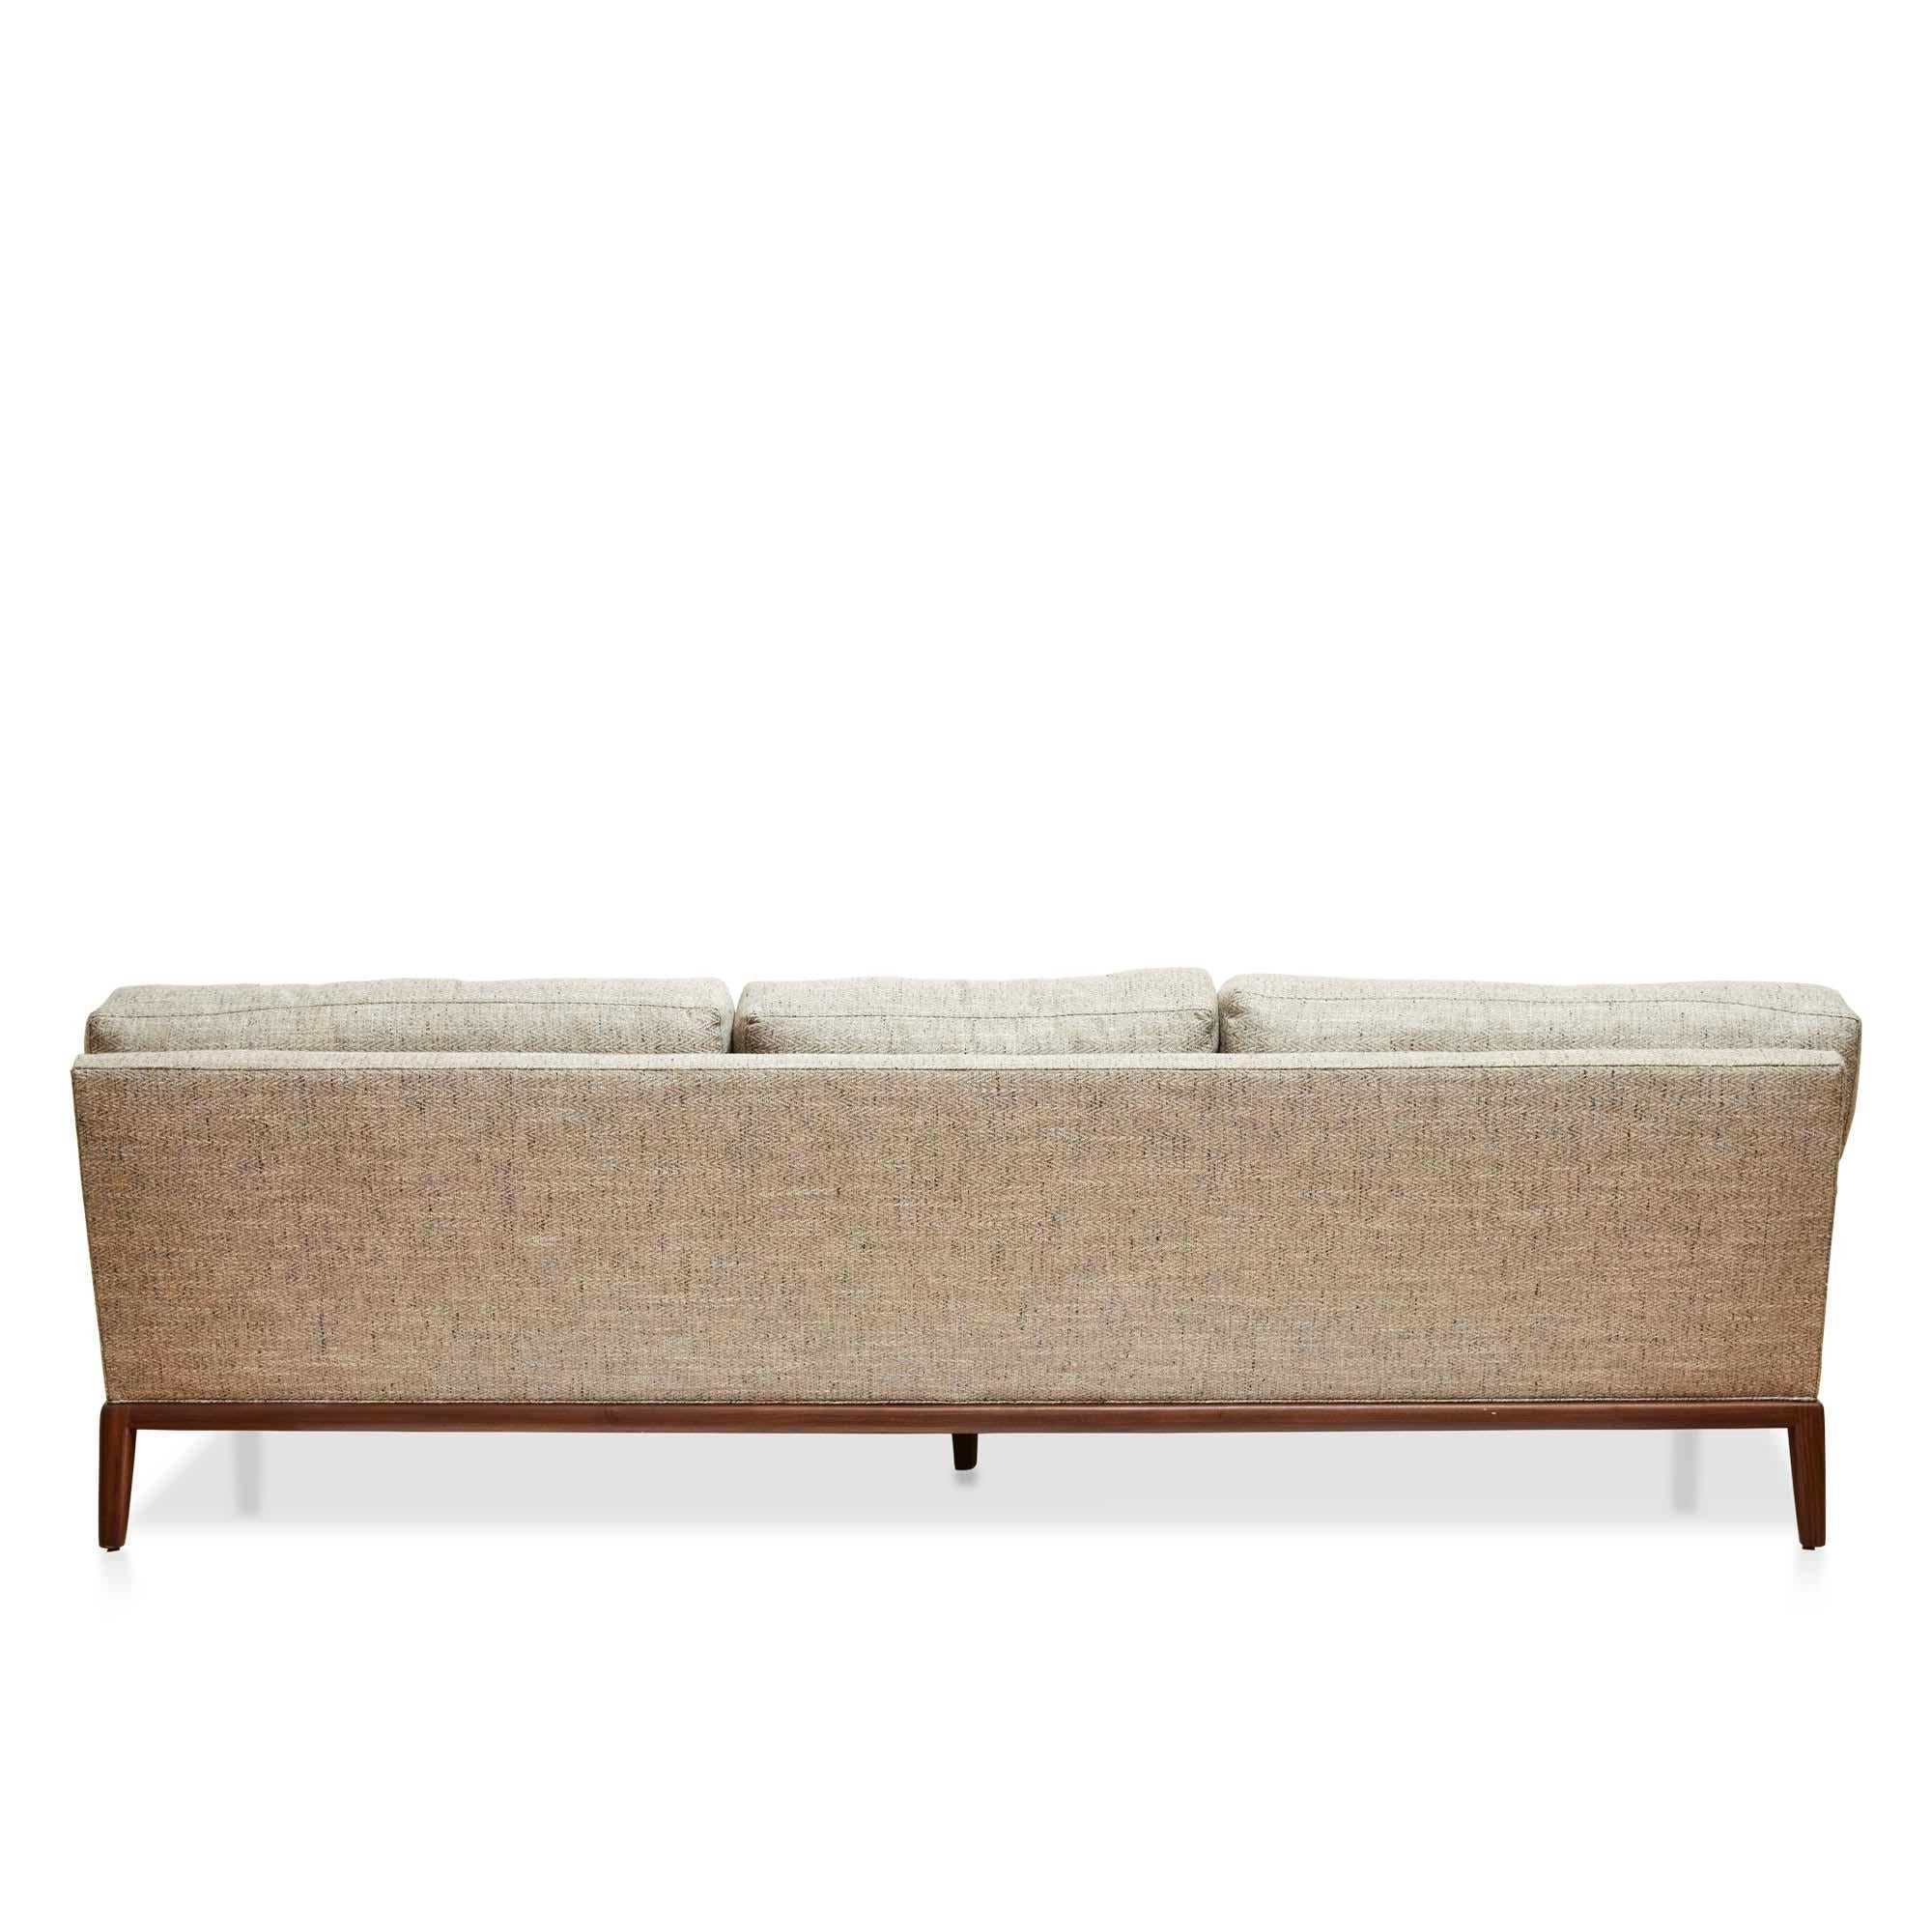 lawson fenning sofa